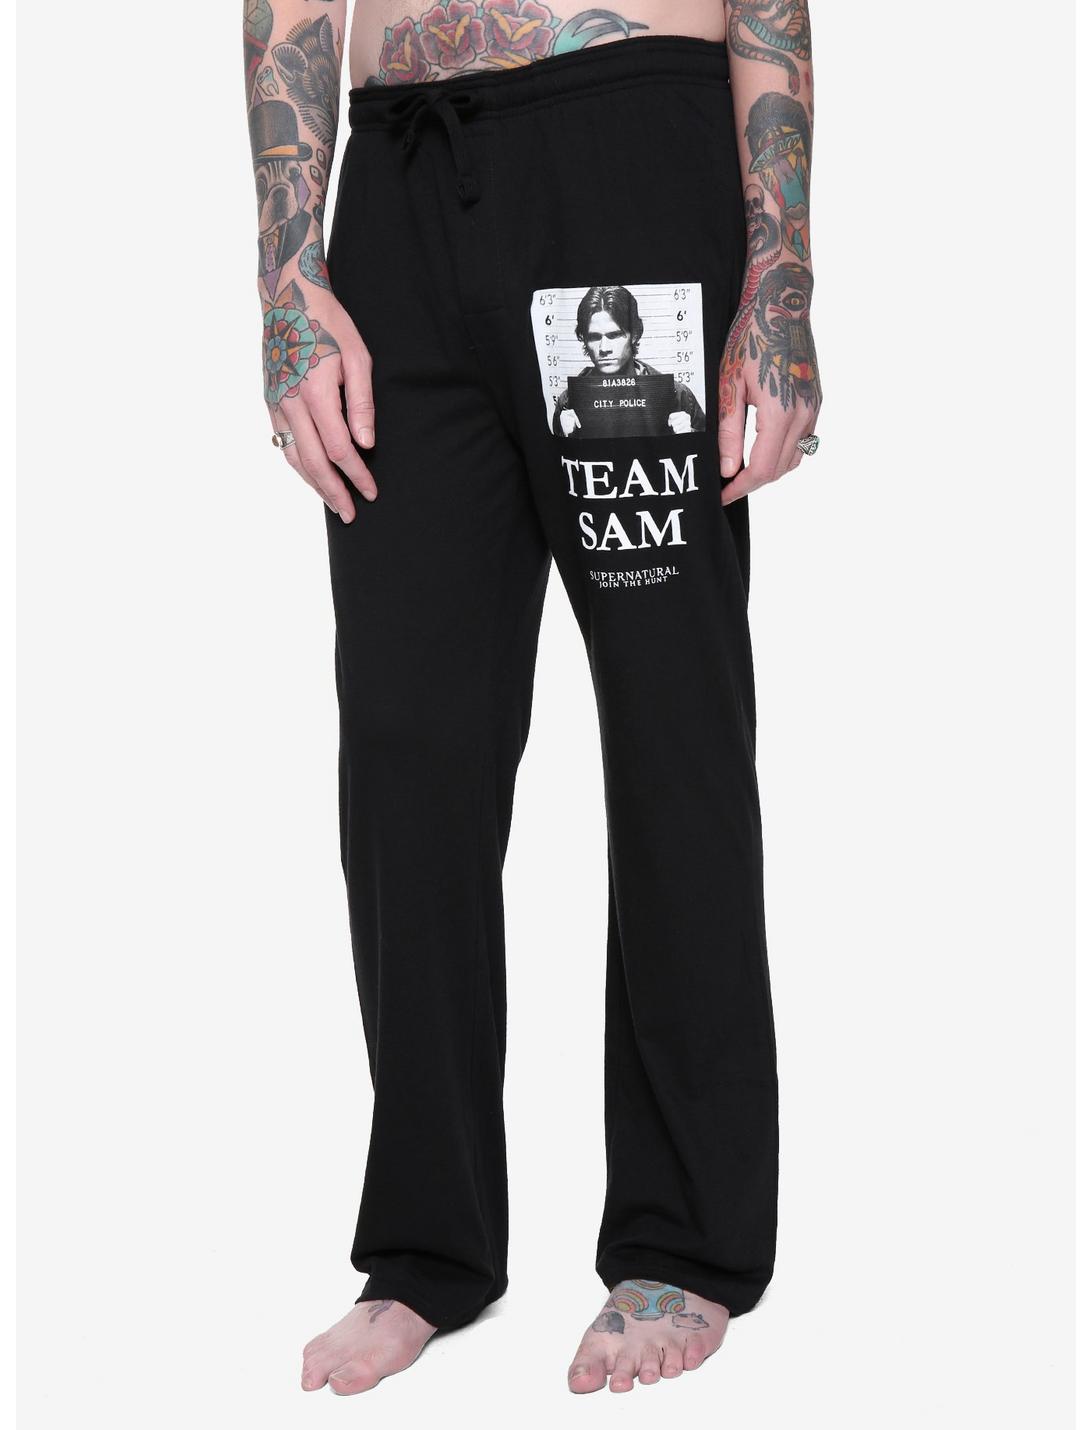 Supernatural Team Sam Guys Pajama Pants, BLACK, hi-res